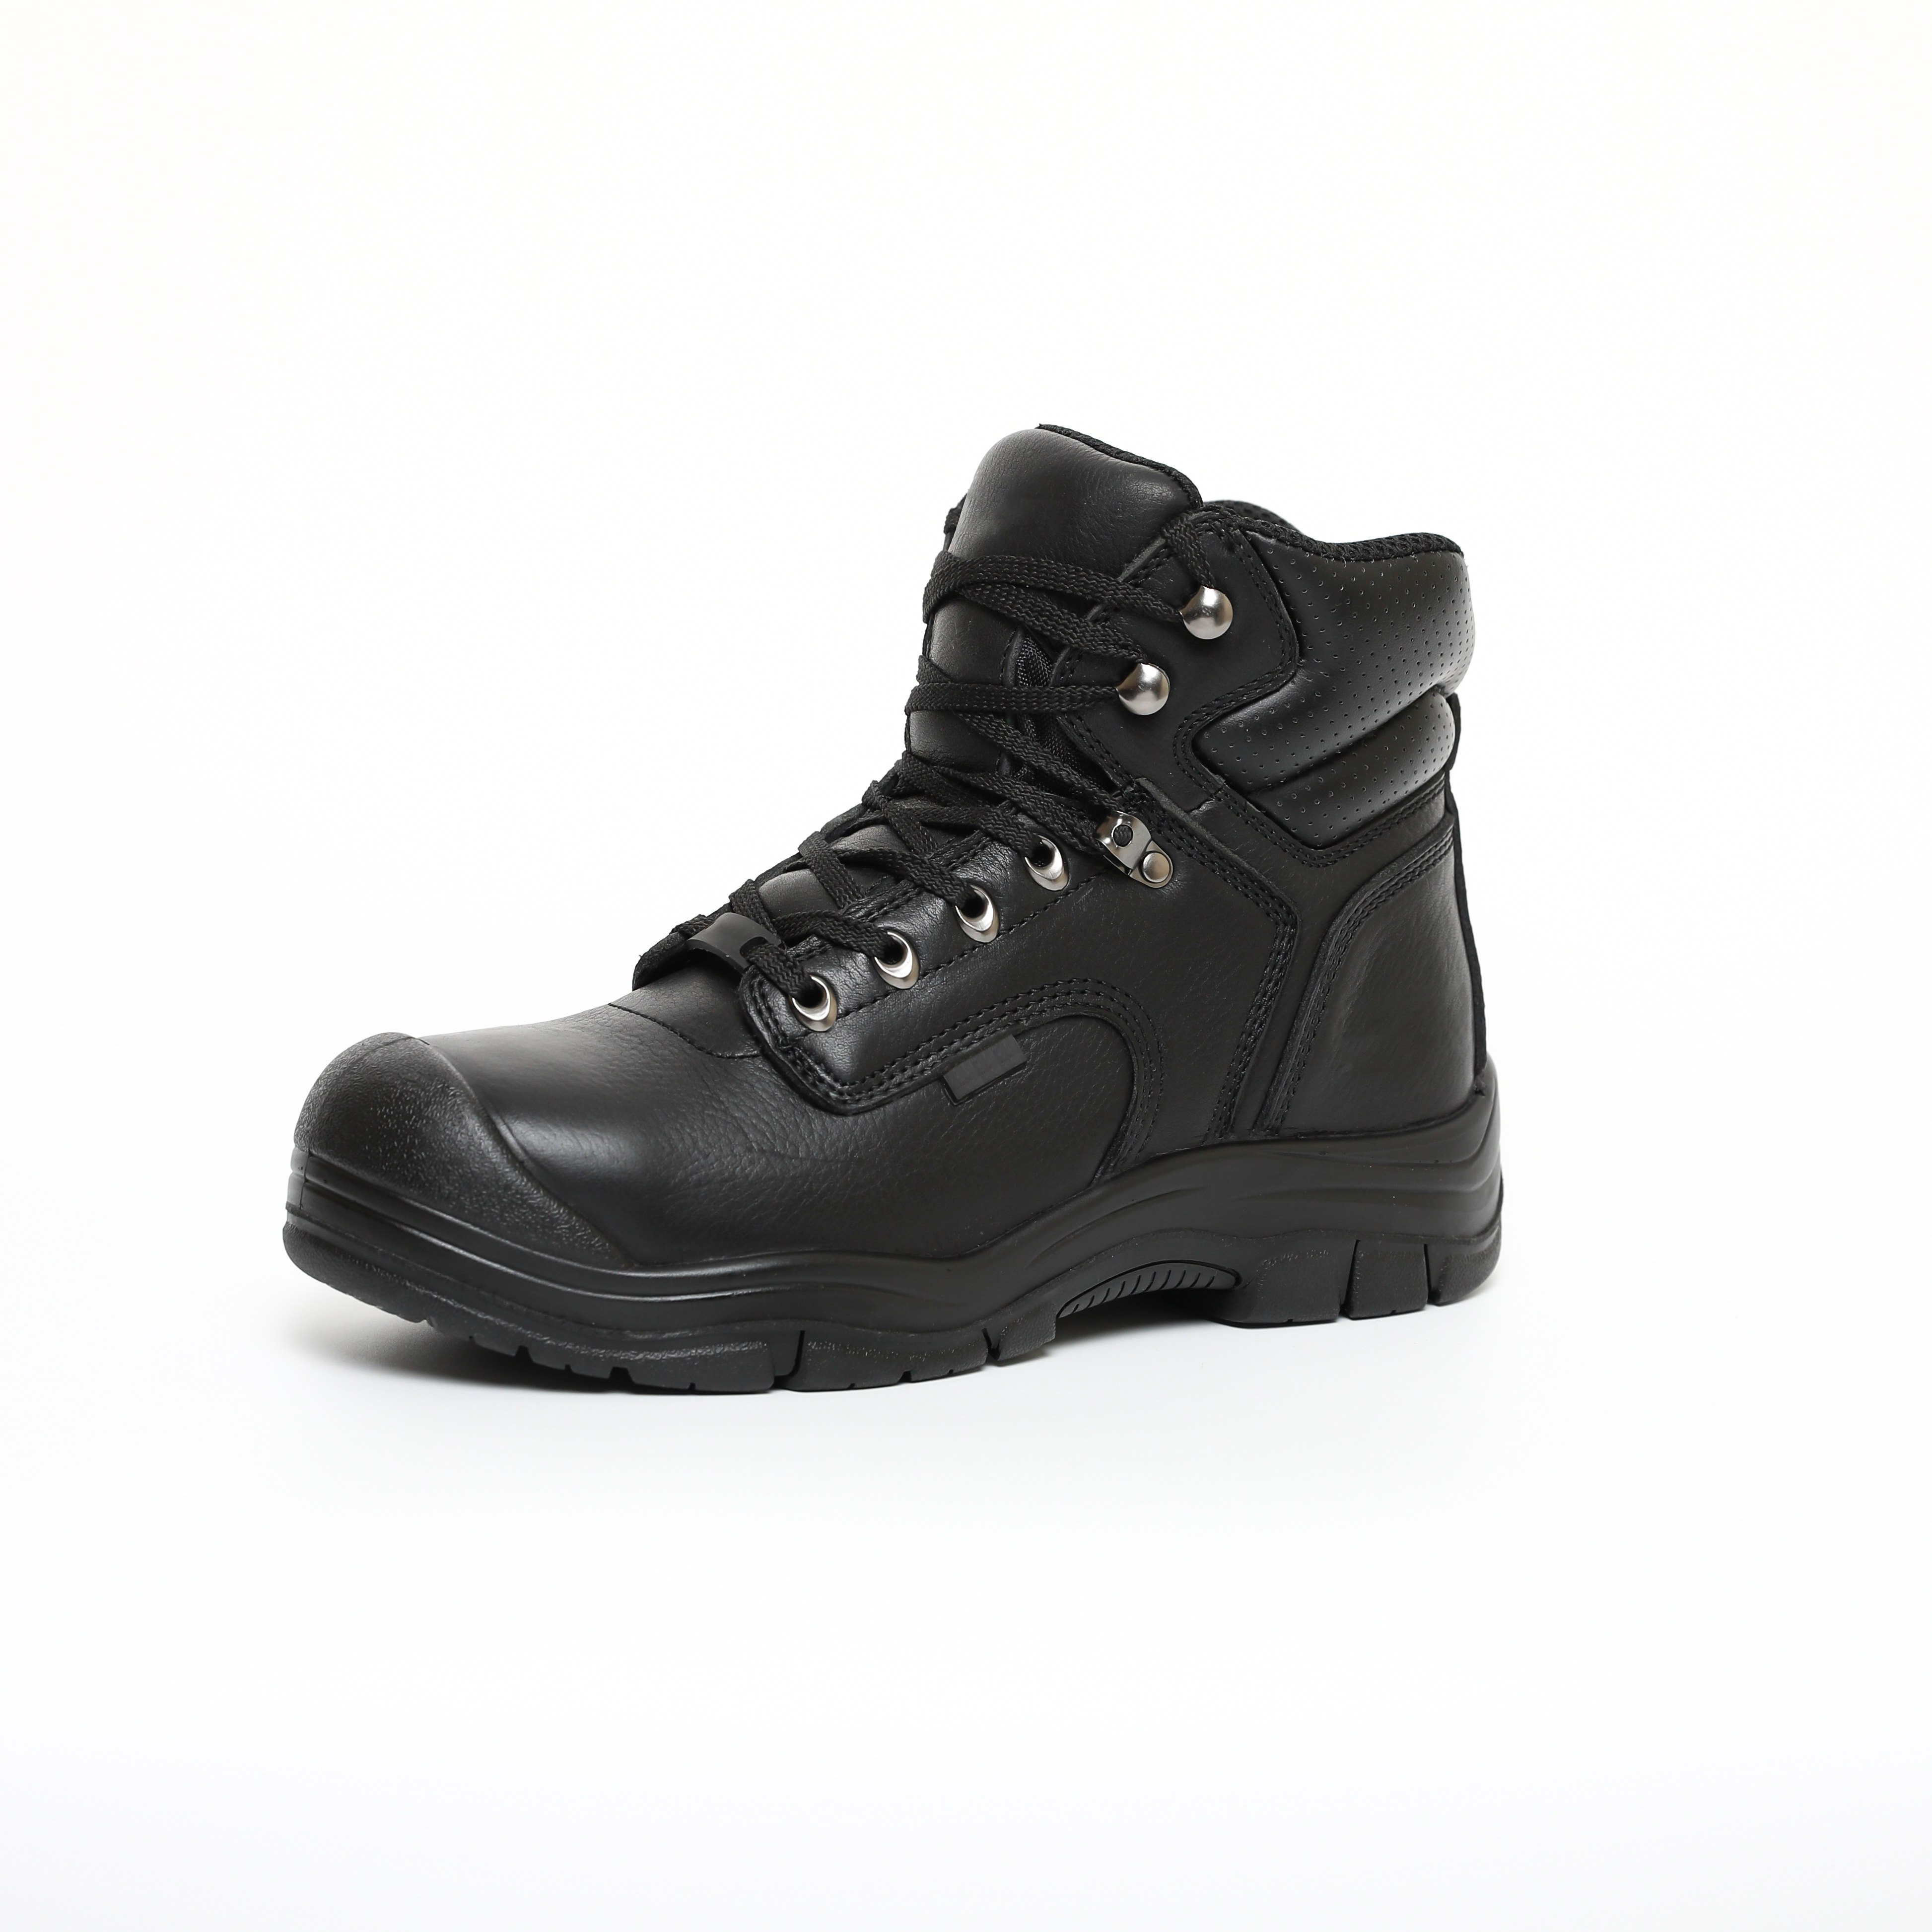 Ανδρικές μπότες εργασίας ασφαλείας 6" Σκούρο καφέ Oill, Full Grain, δερμάτινες μπότες